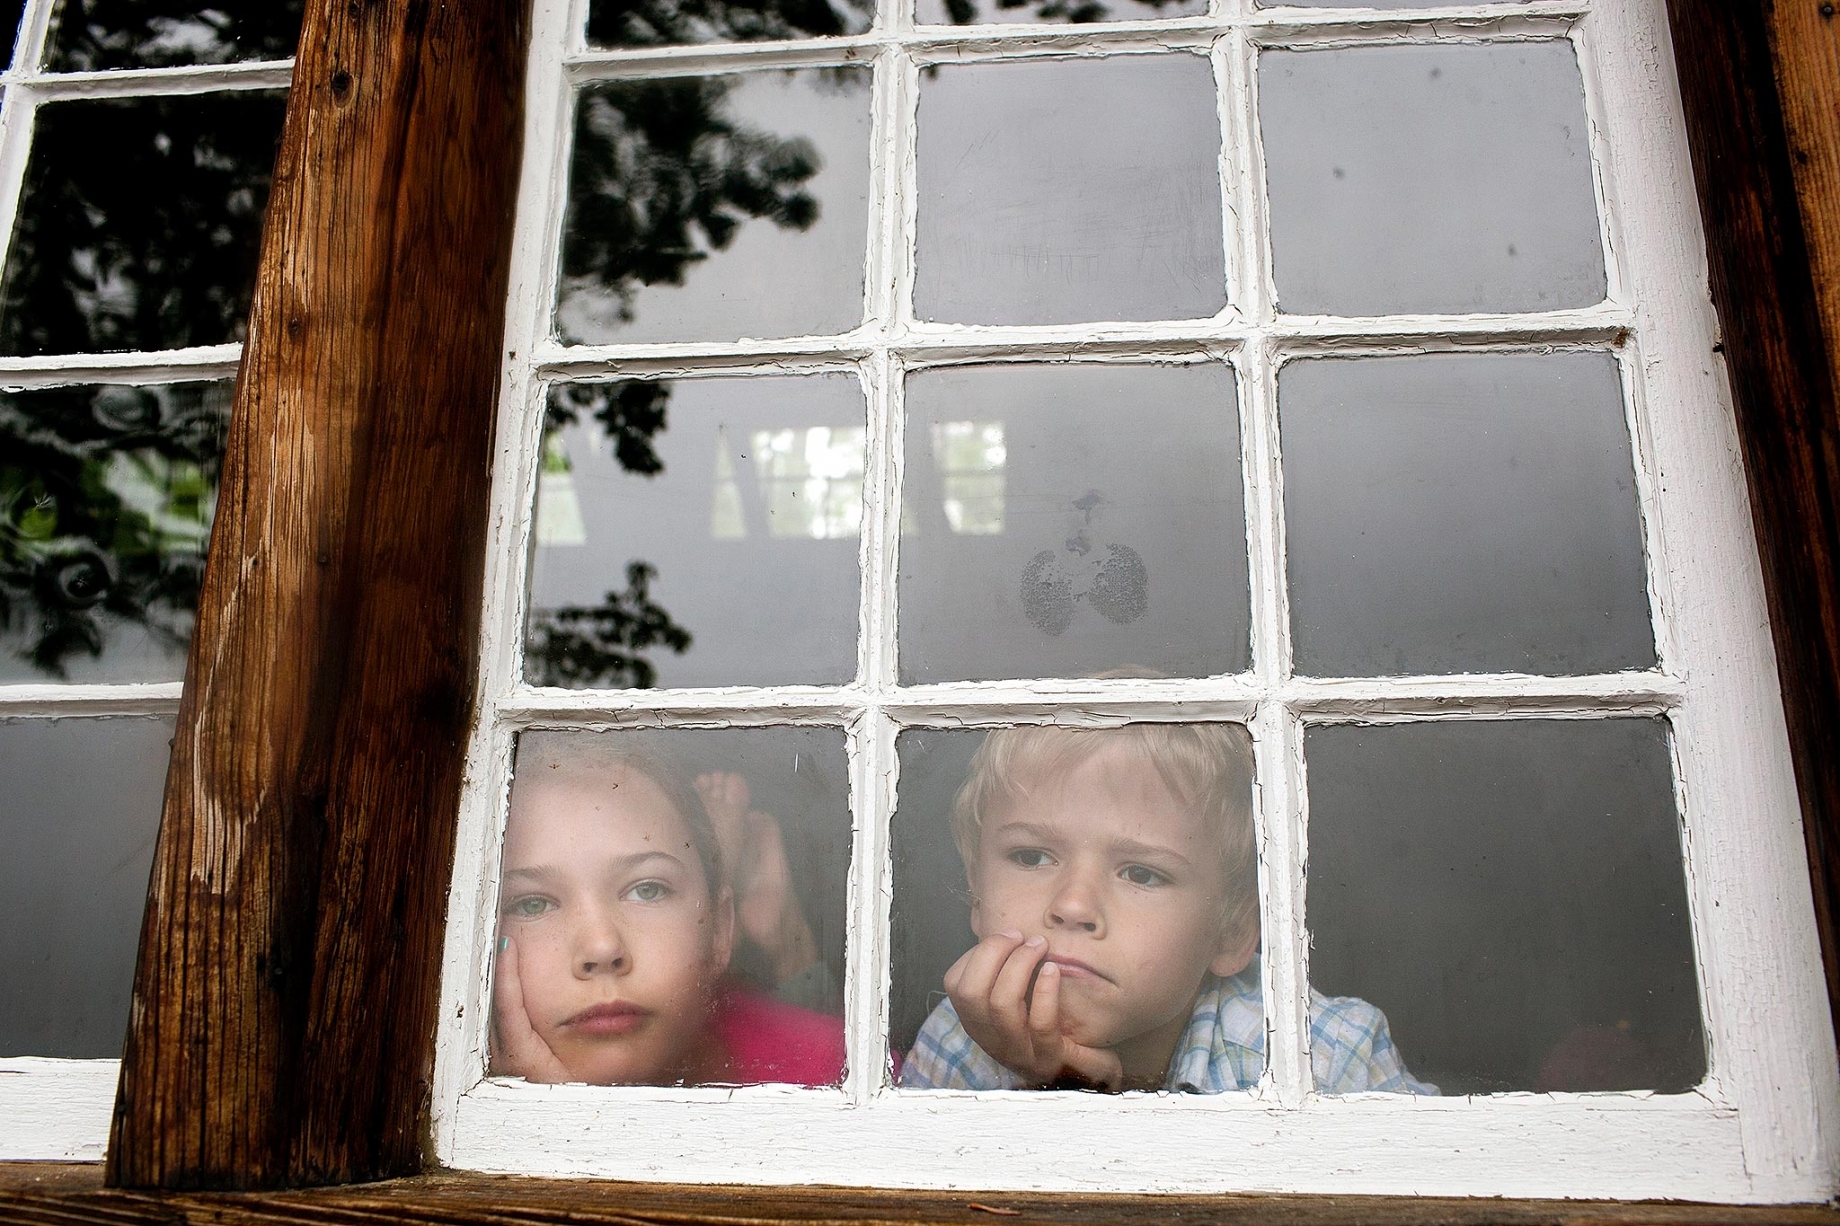 Children looking through window